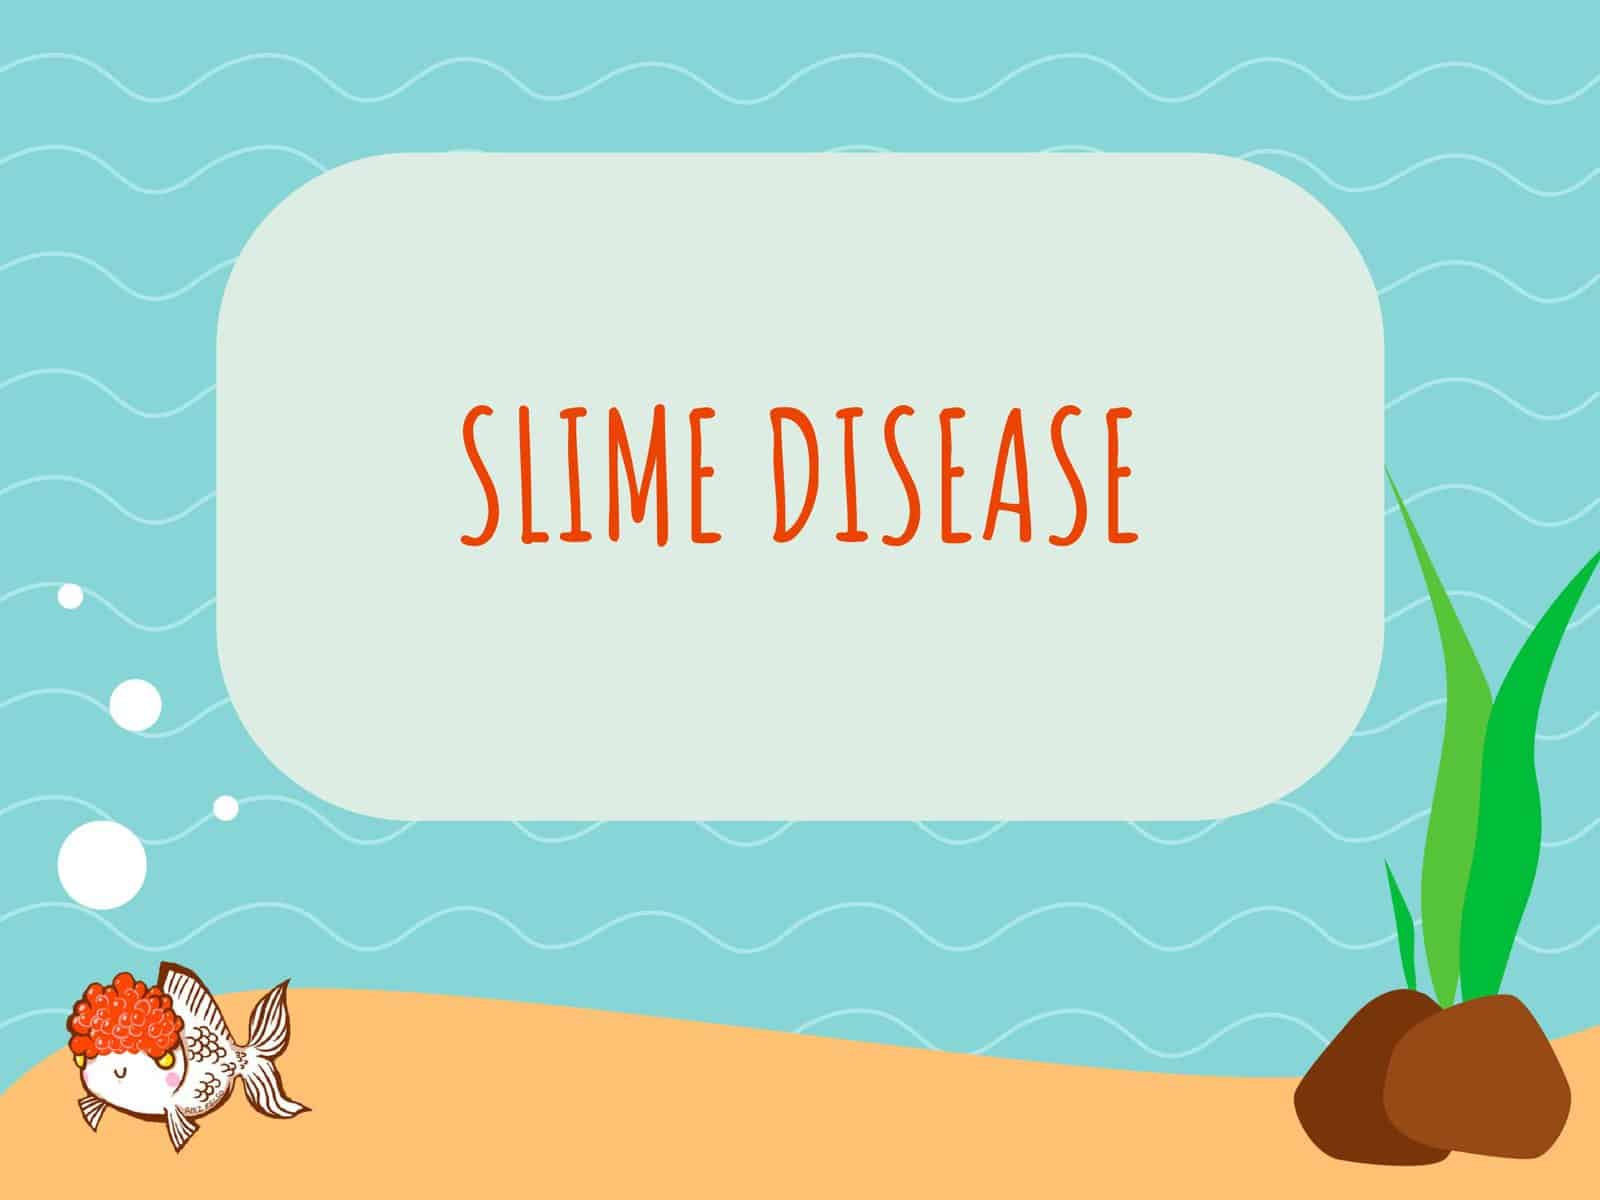 Slime Disease